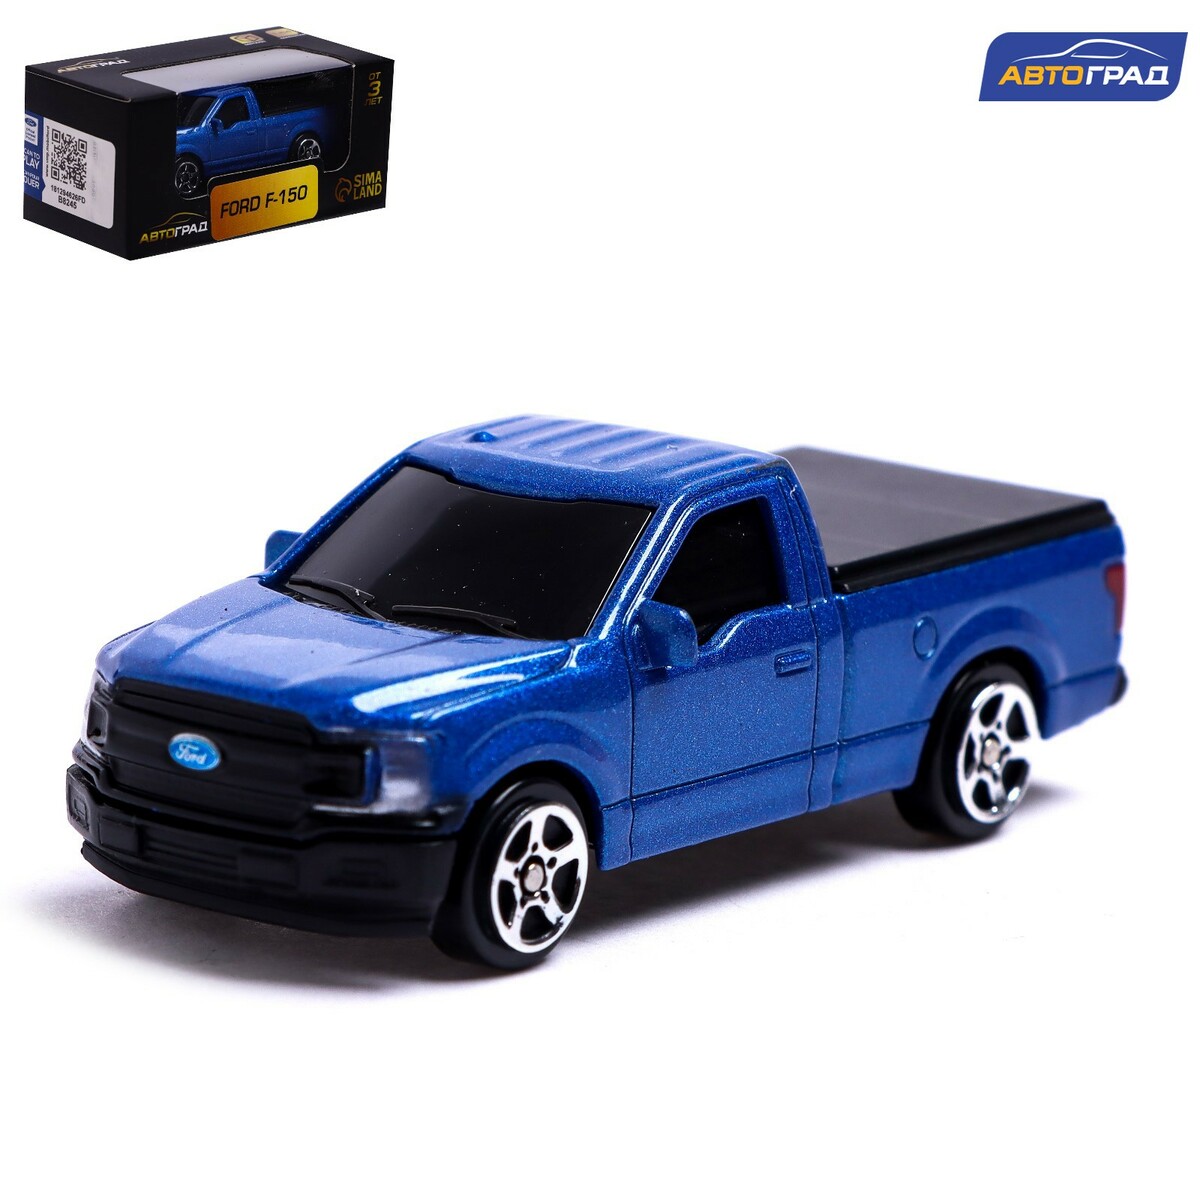 Машина металлическая ford f-150, 1:64, цвет синий tom ford 002